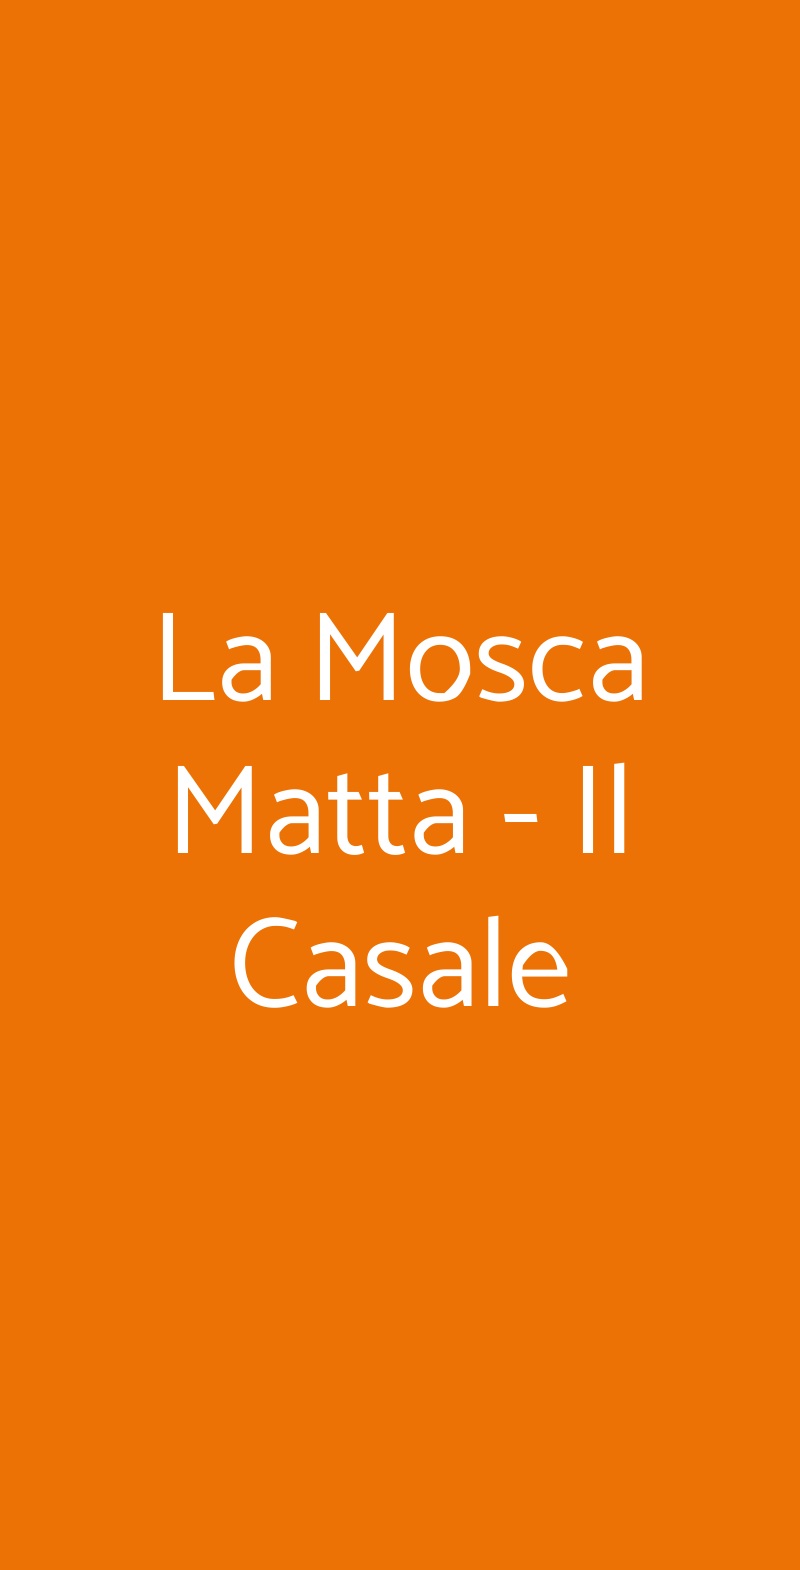 La Mosca Matta - Il Casale Roma menù 1 pagina